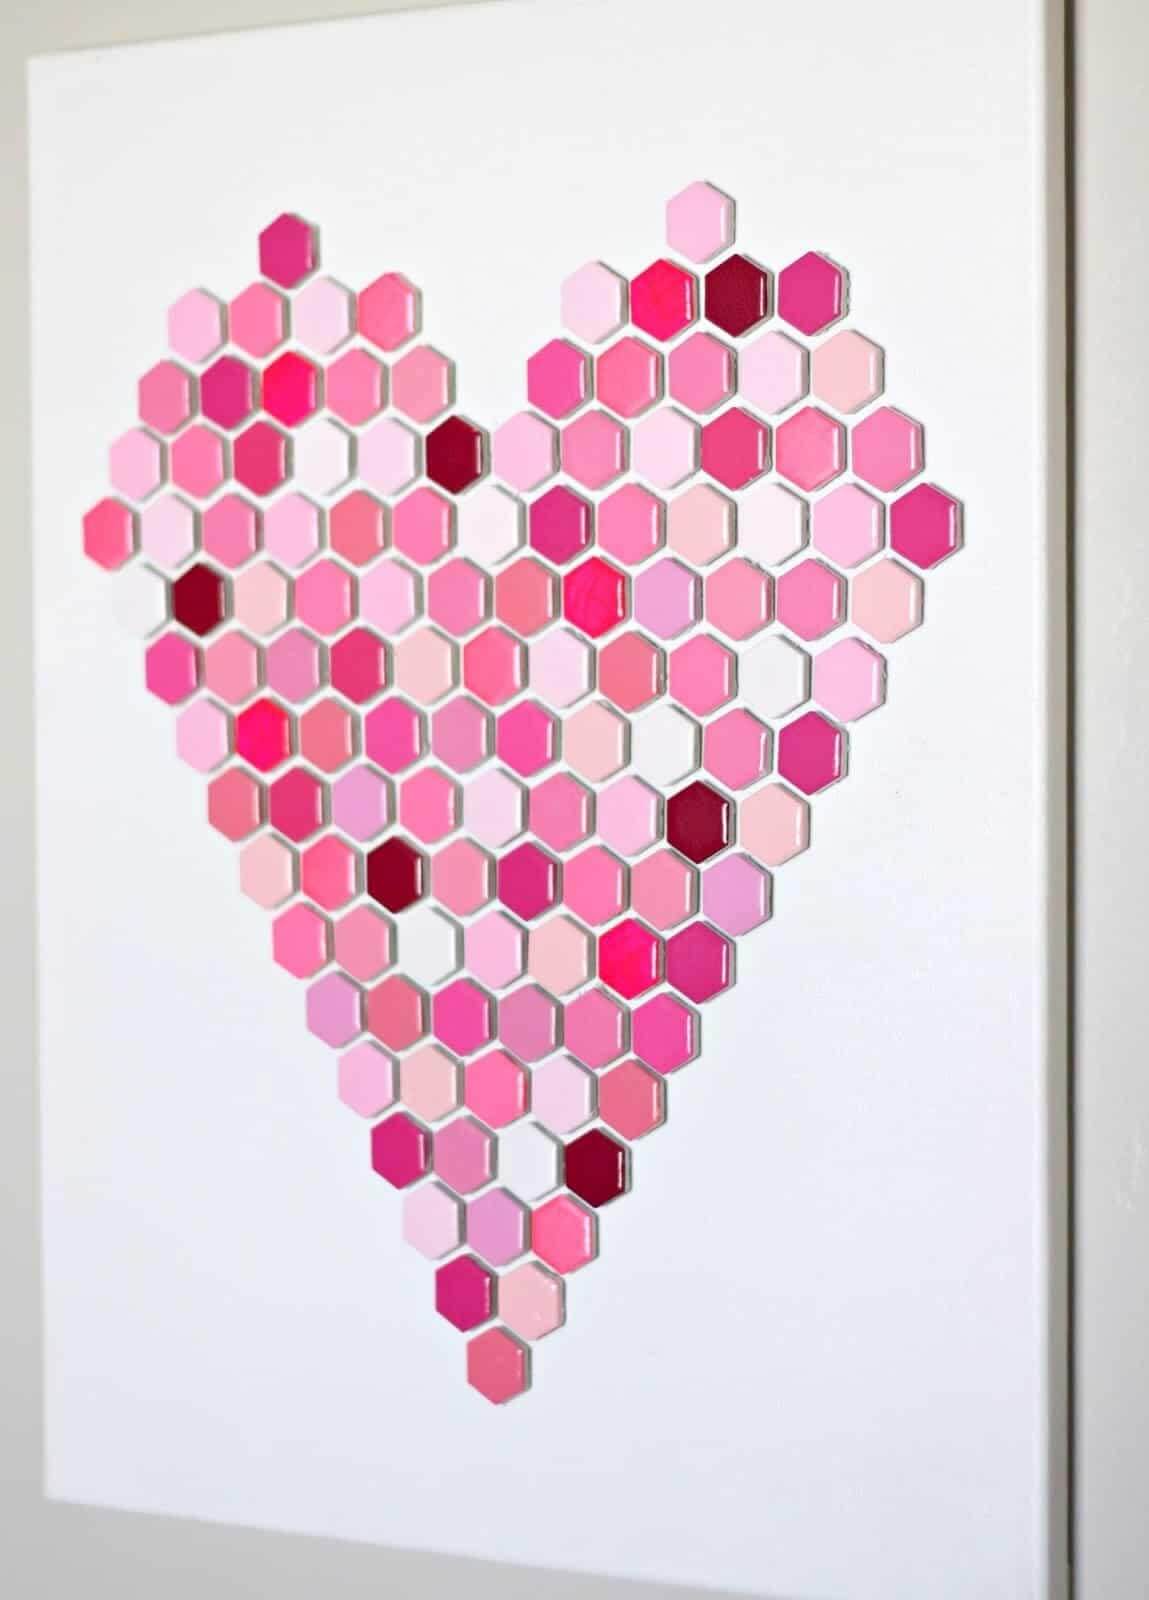 Hexagon heart tile wall art